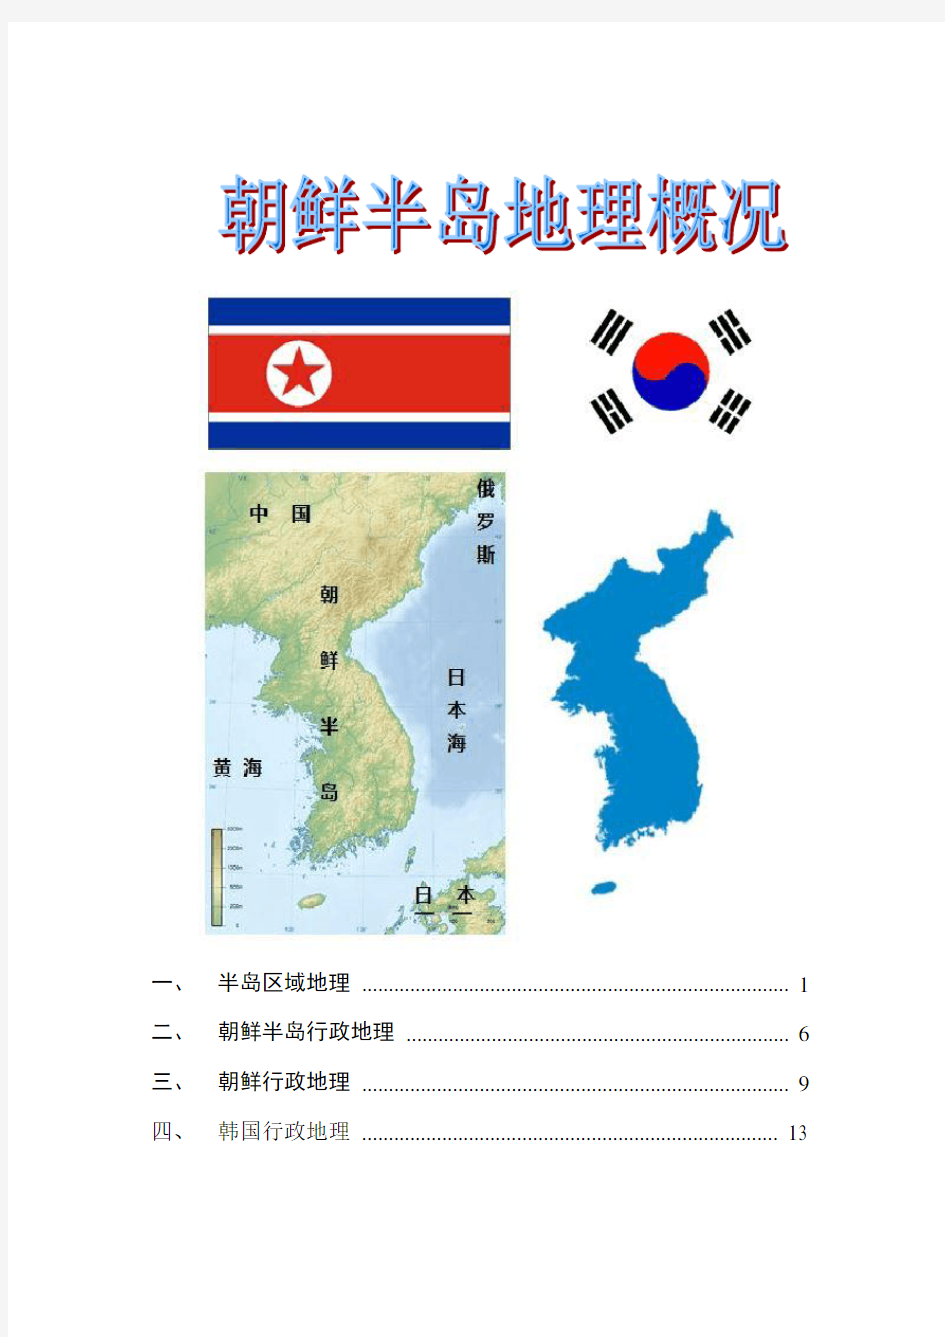 朝鲜地理概况